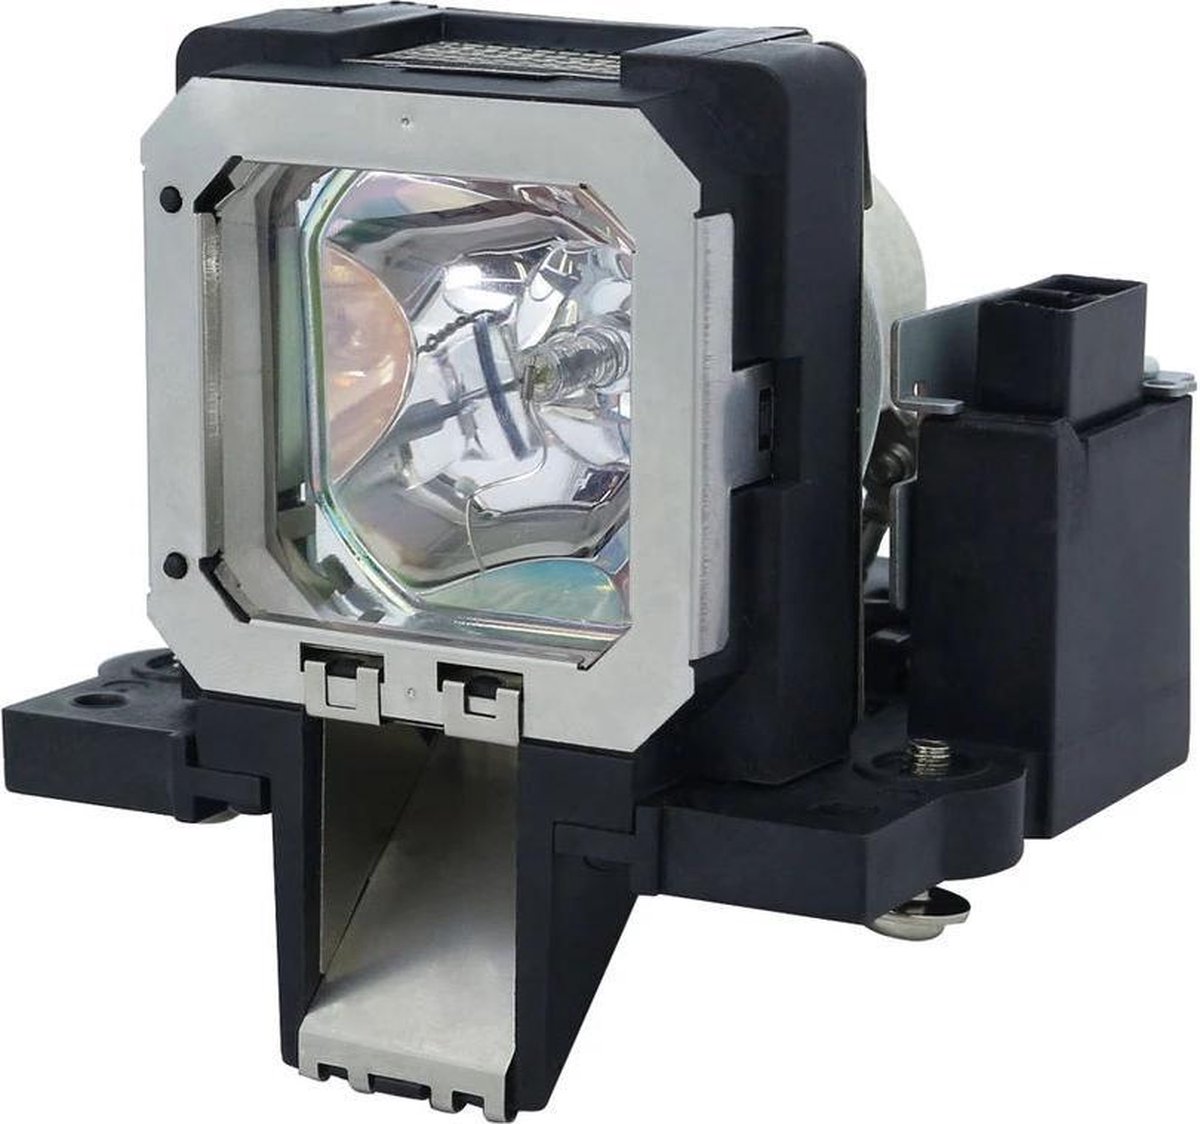 Beamerlamp geschikt voor de JVC DLA-RS4800 beamer, lamp code PK-L2210UP. Bevat originele NSHA lamp, prestaties gelijk aan origineel.